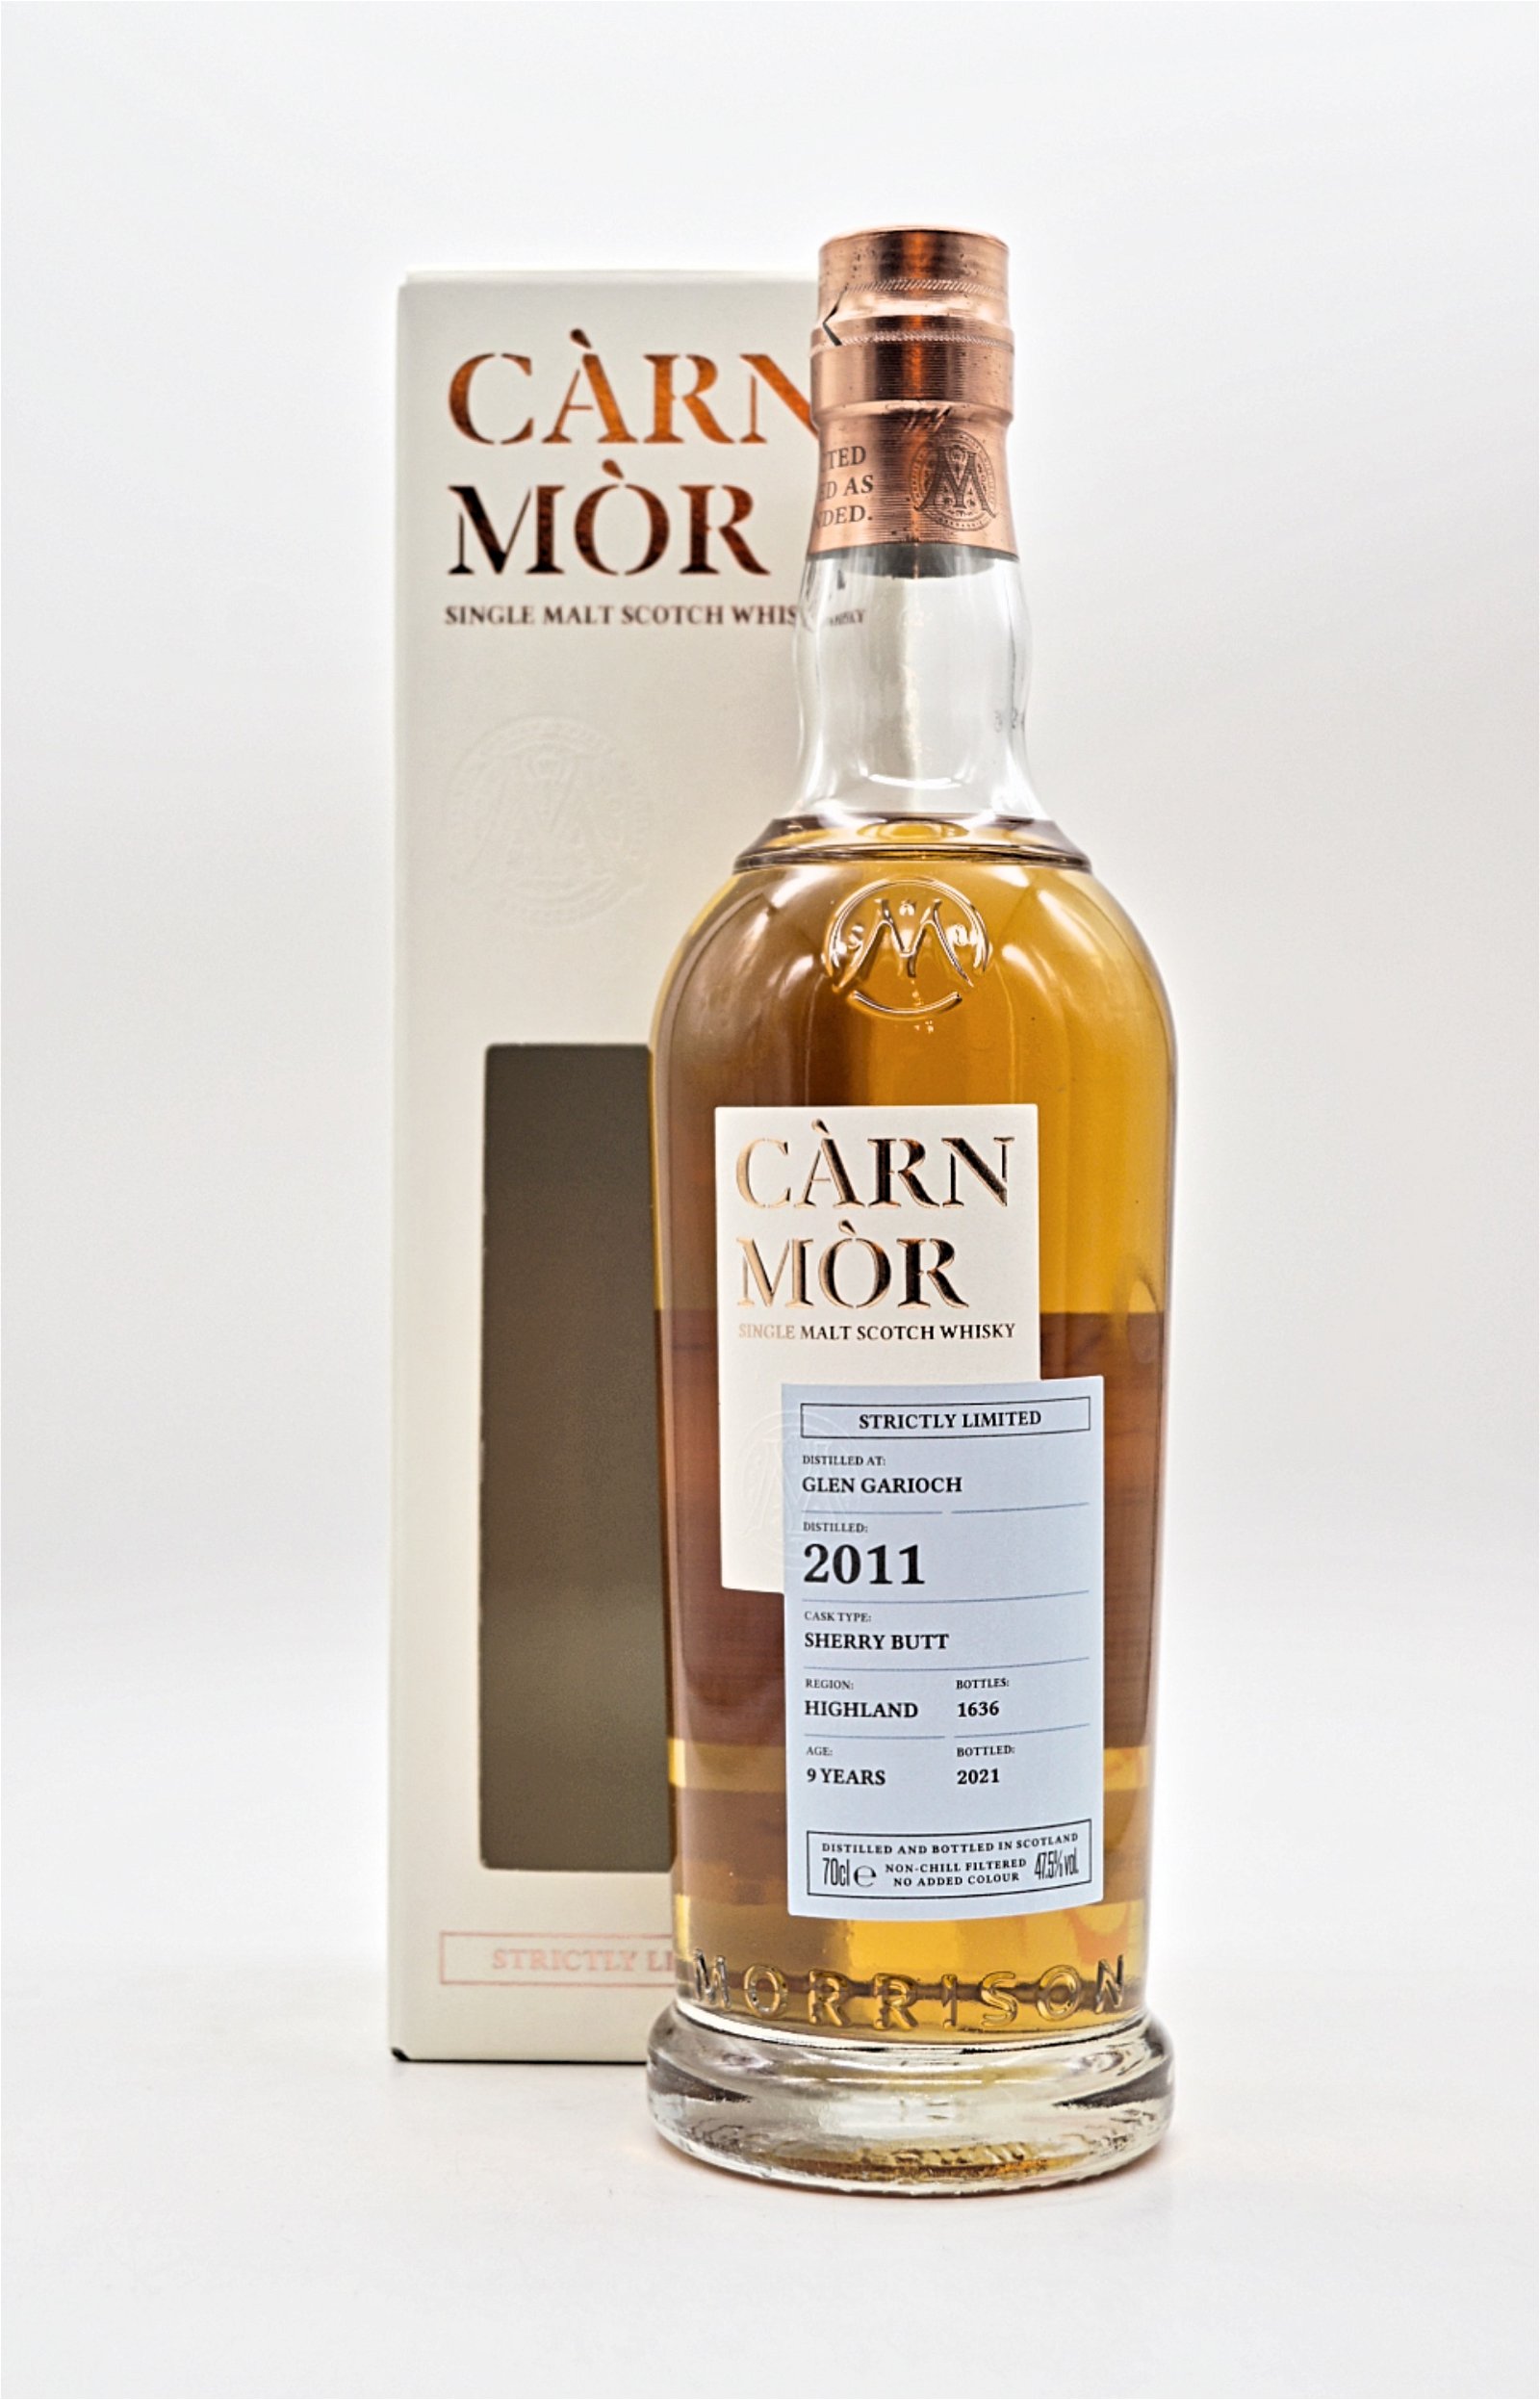 Carn Mor Glen Garioch 2011 Sherry Butt Strictly Limited Single Malt Scotch Whisky